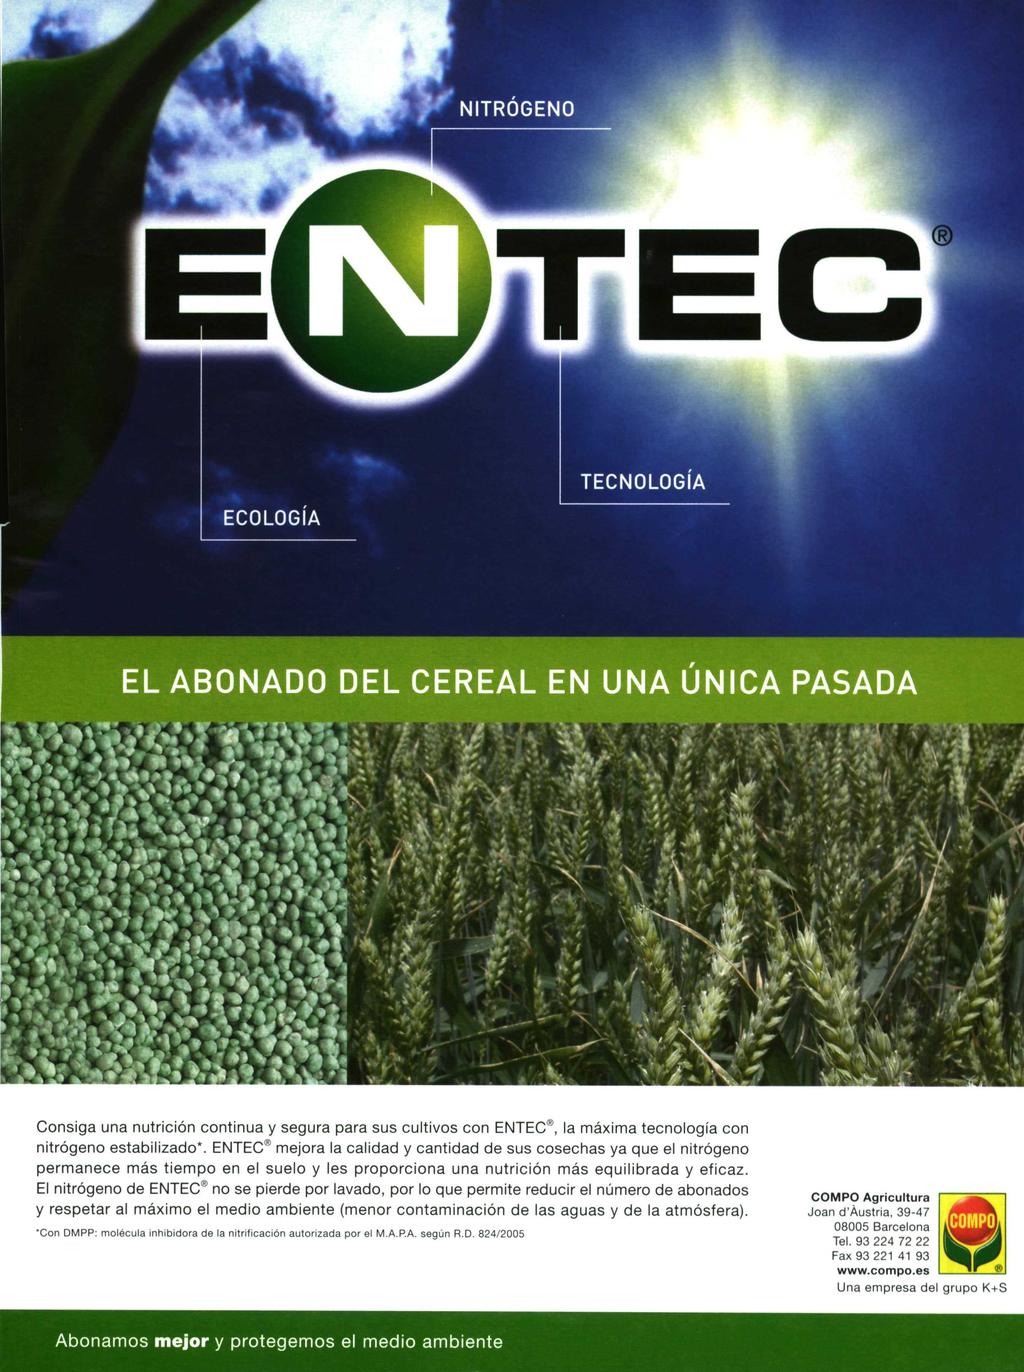 Consiga una nutrición continua y segura para sus cultivos con ENTEC`^, la máxima tecnología con nitrógeno estabilizado'.